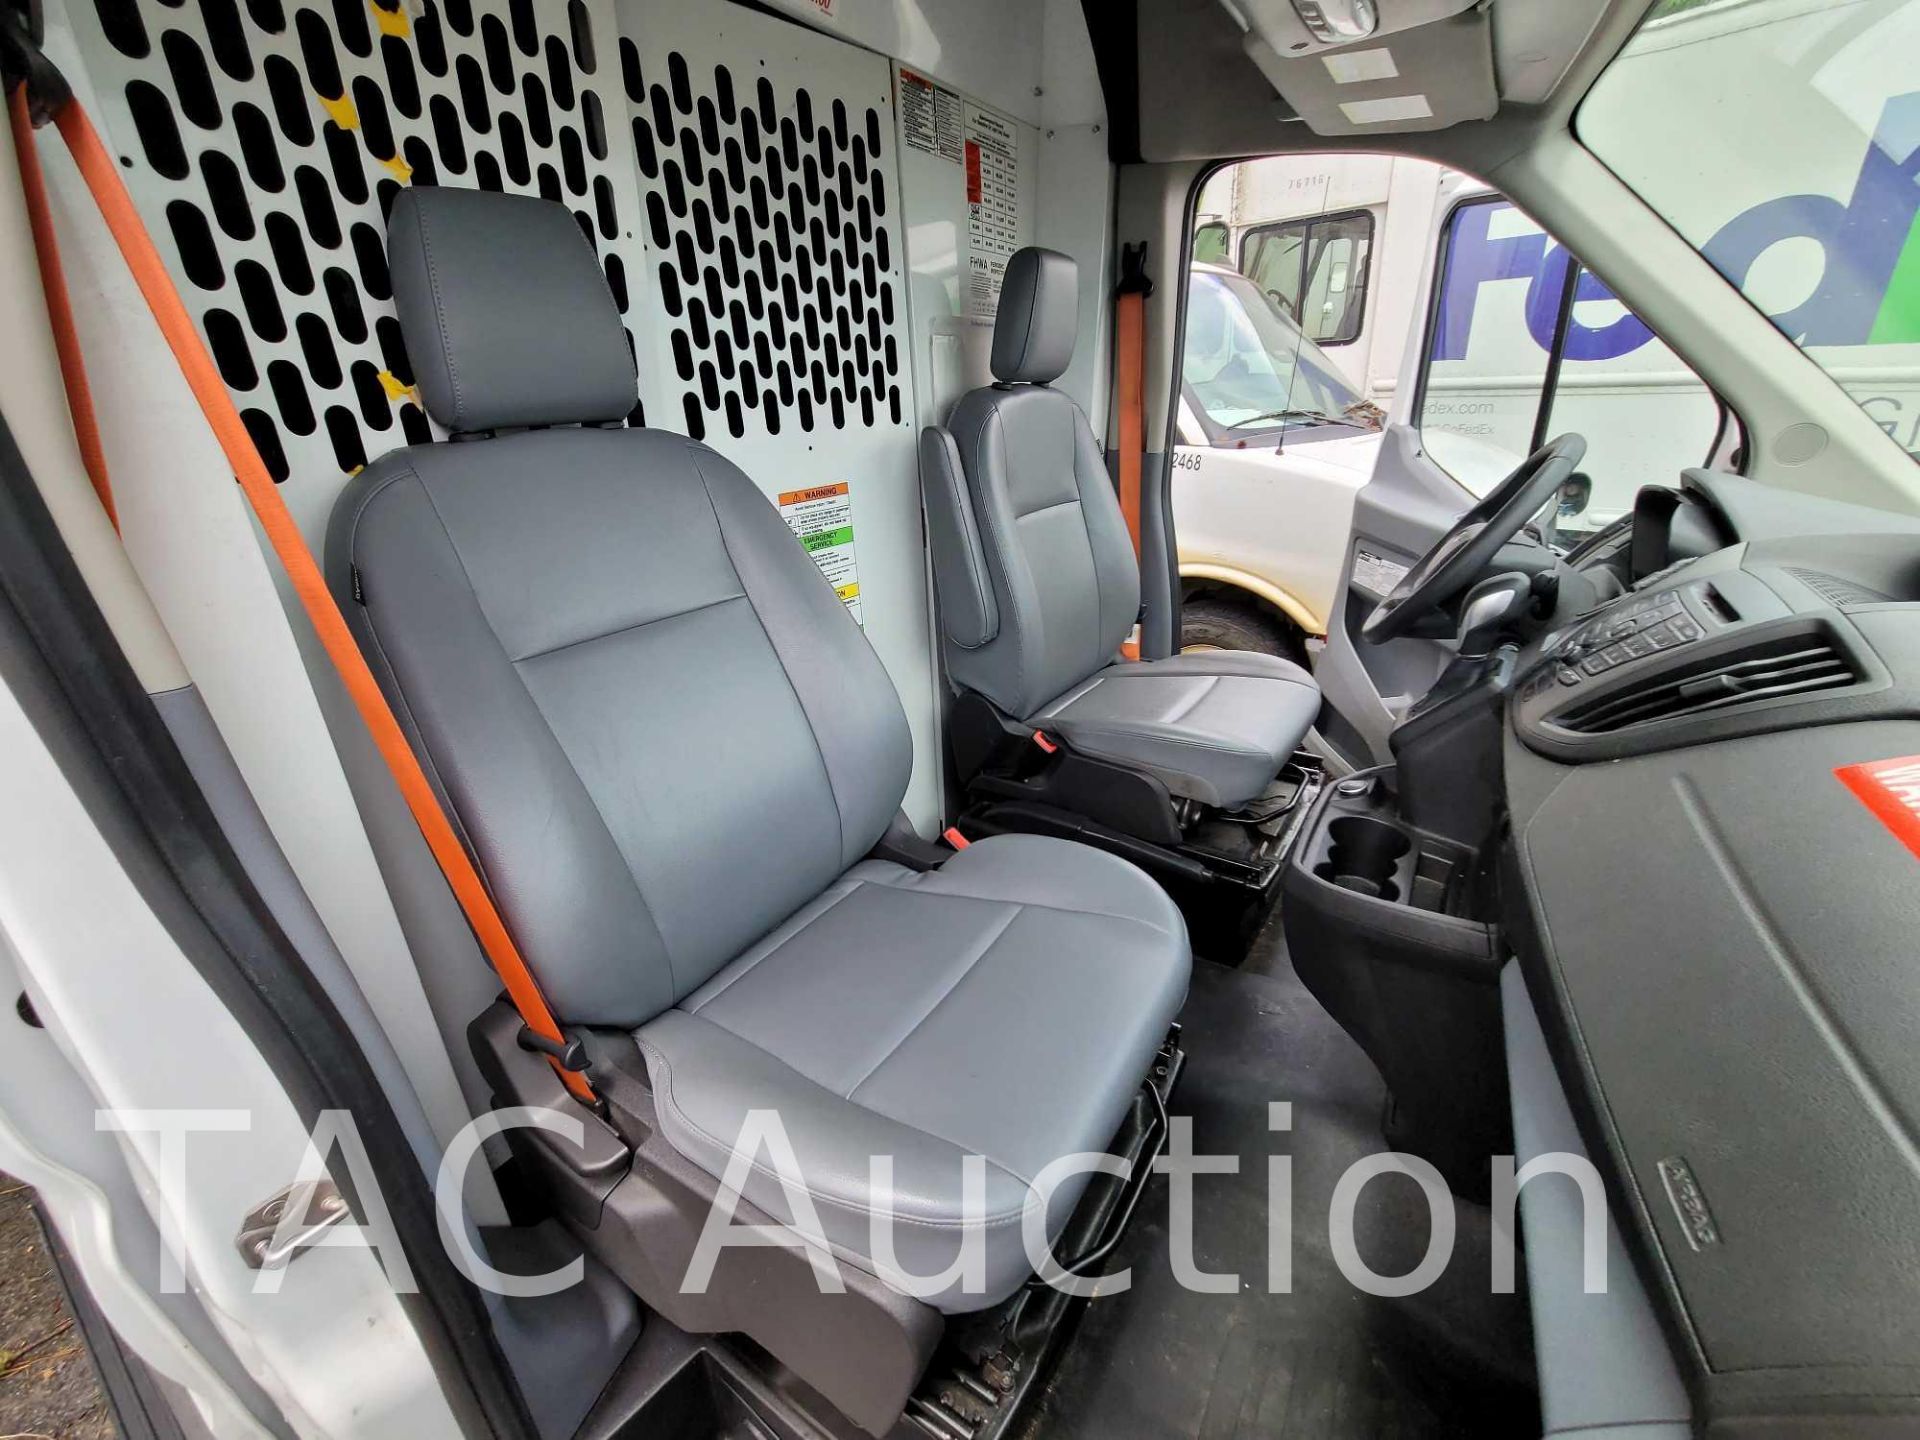 2019 Ford Transit 150 Cargo Van - Image 24 of 50